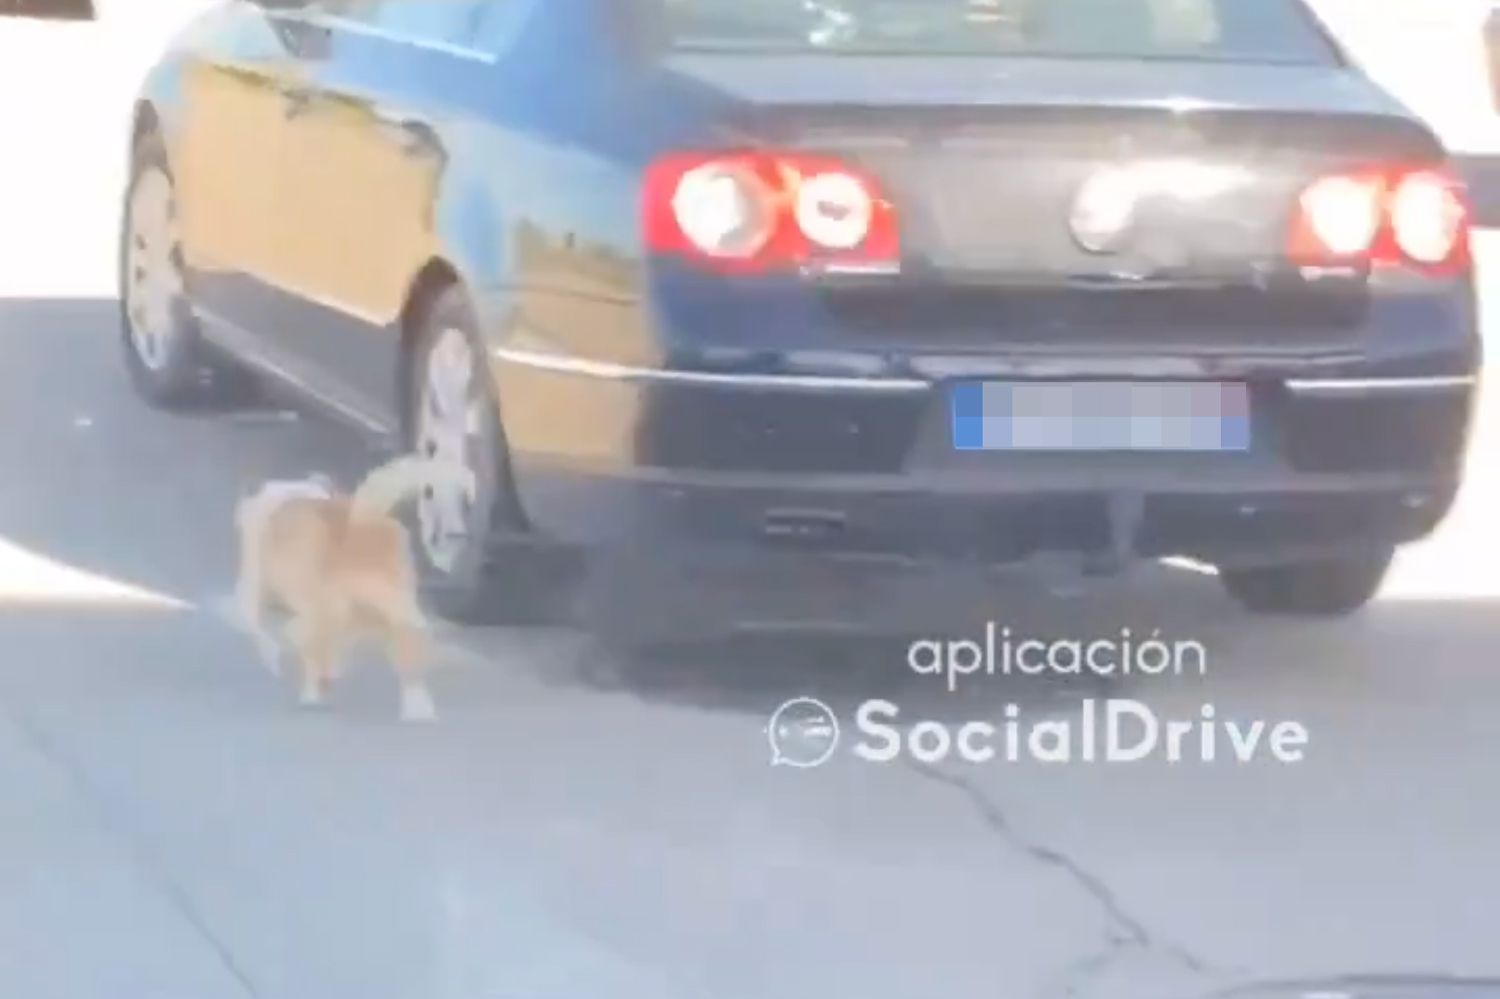 SocialDrive publica el vídeo un coche en marcha mientras 'pasea' a un perro en Palazuelo (León)